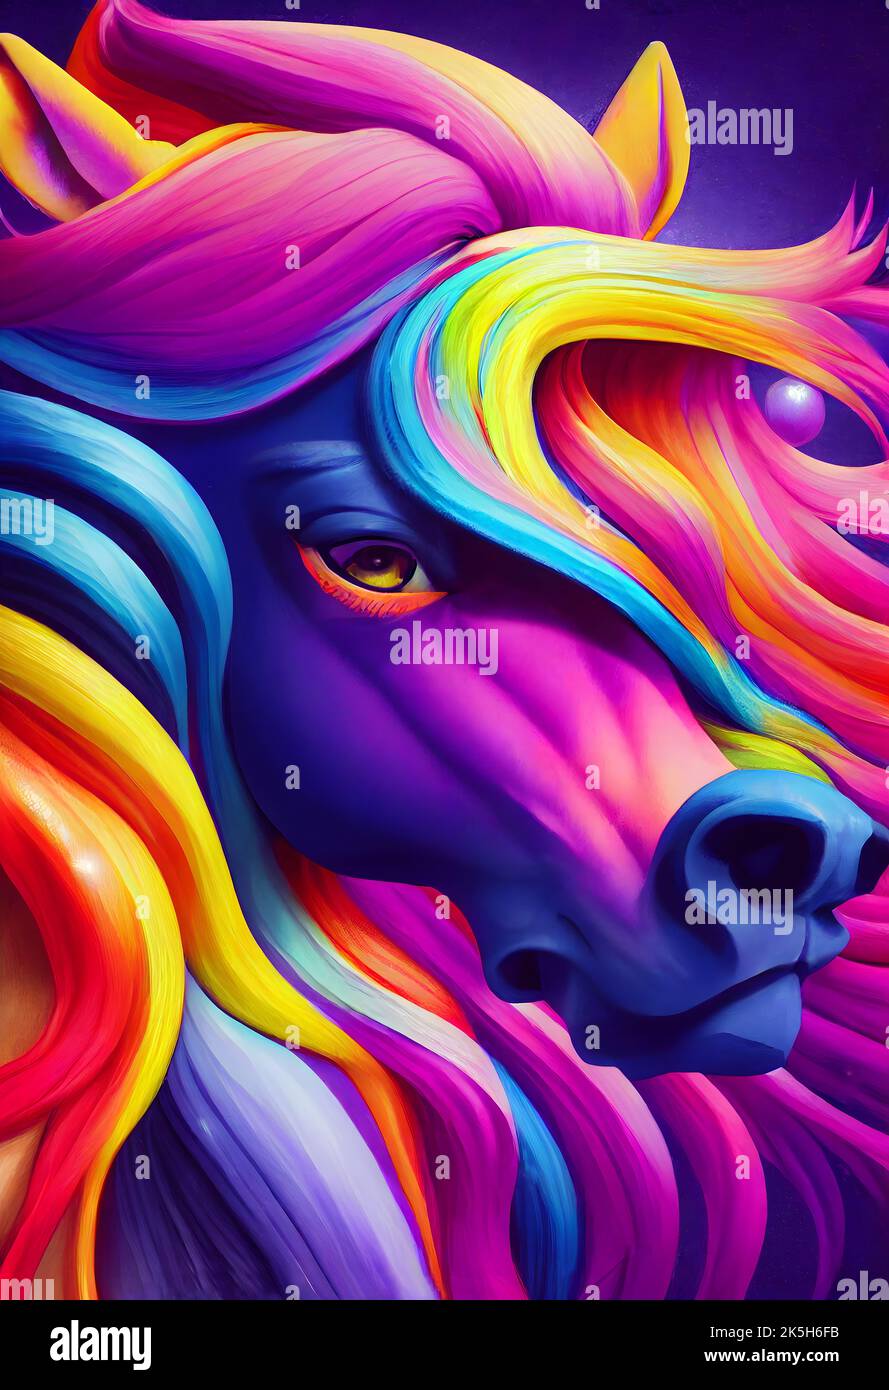 Une composition esthétique surréaliste d'un cheval multicolore Banque D'Images